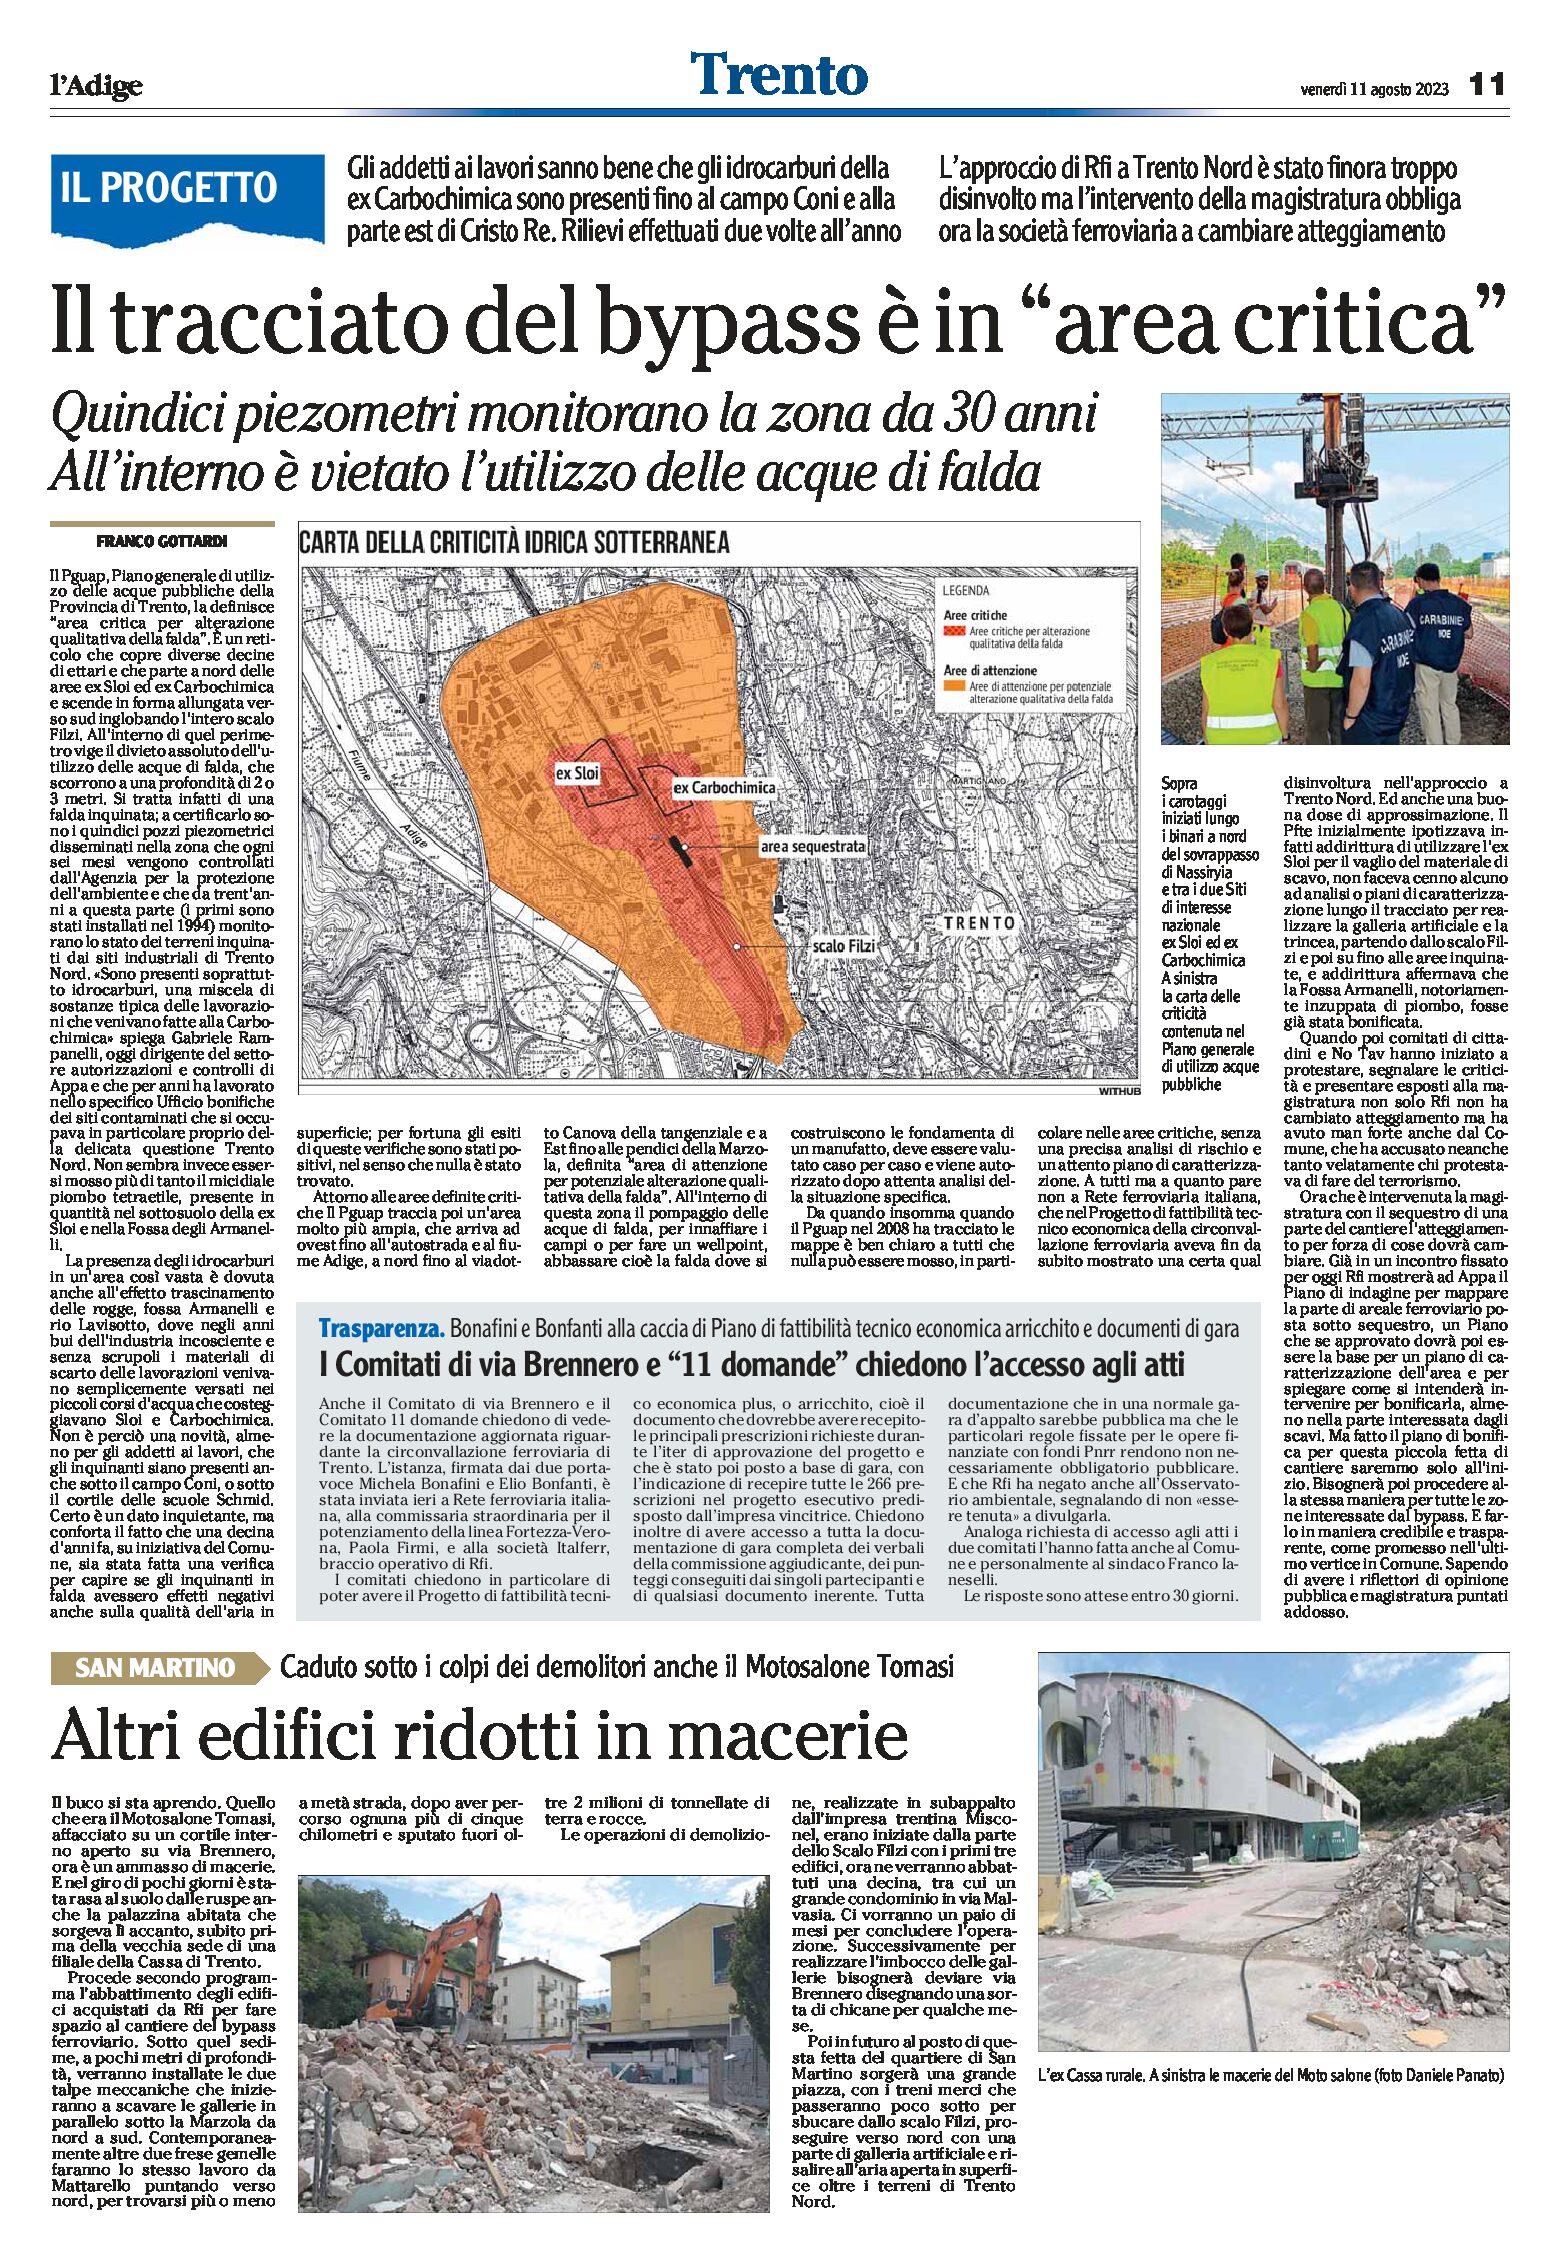 Trento: il tracciato del bypass è in “area critica”